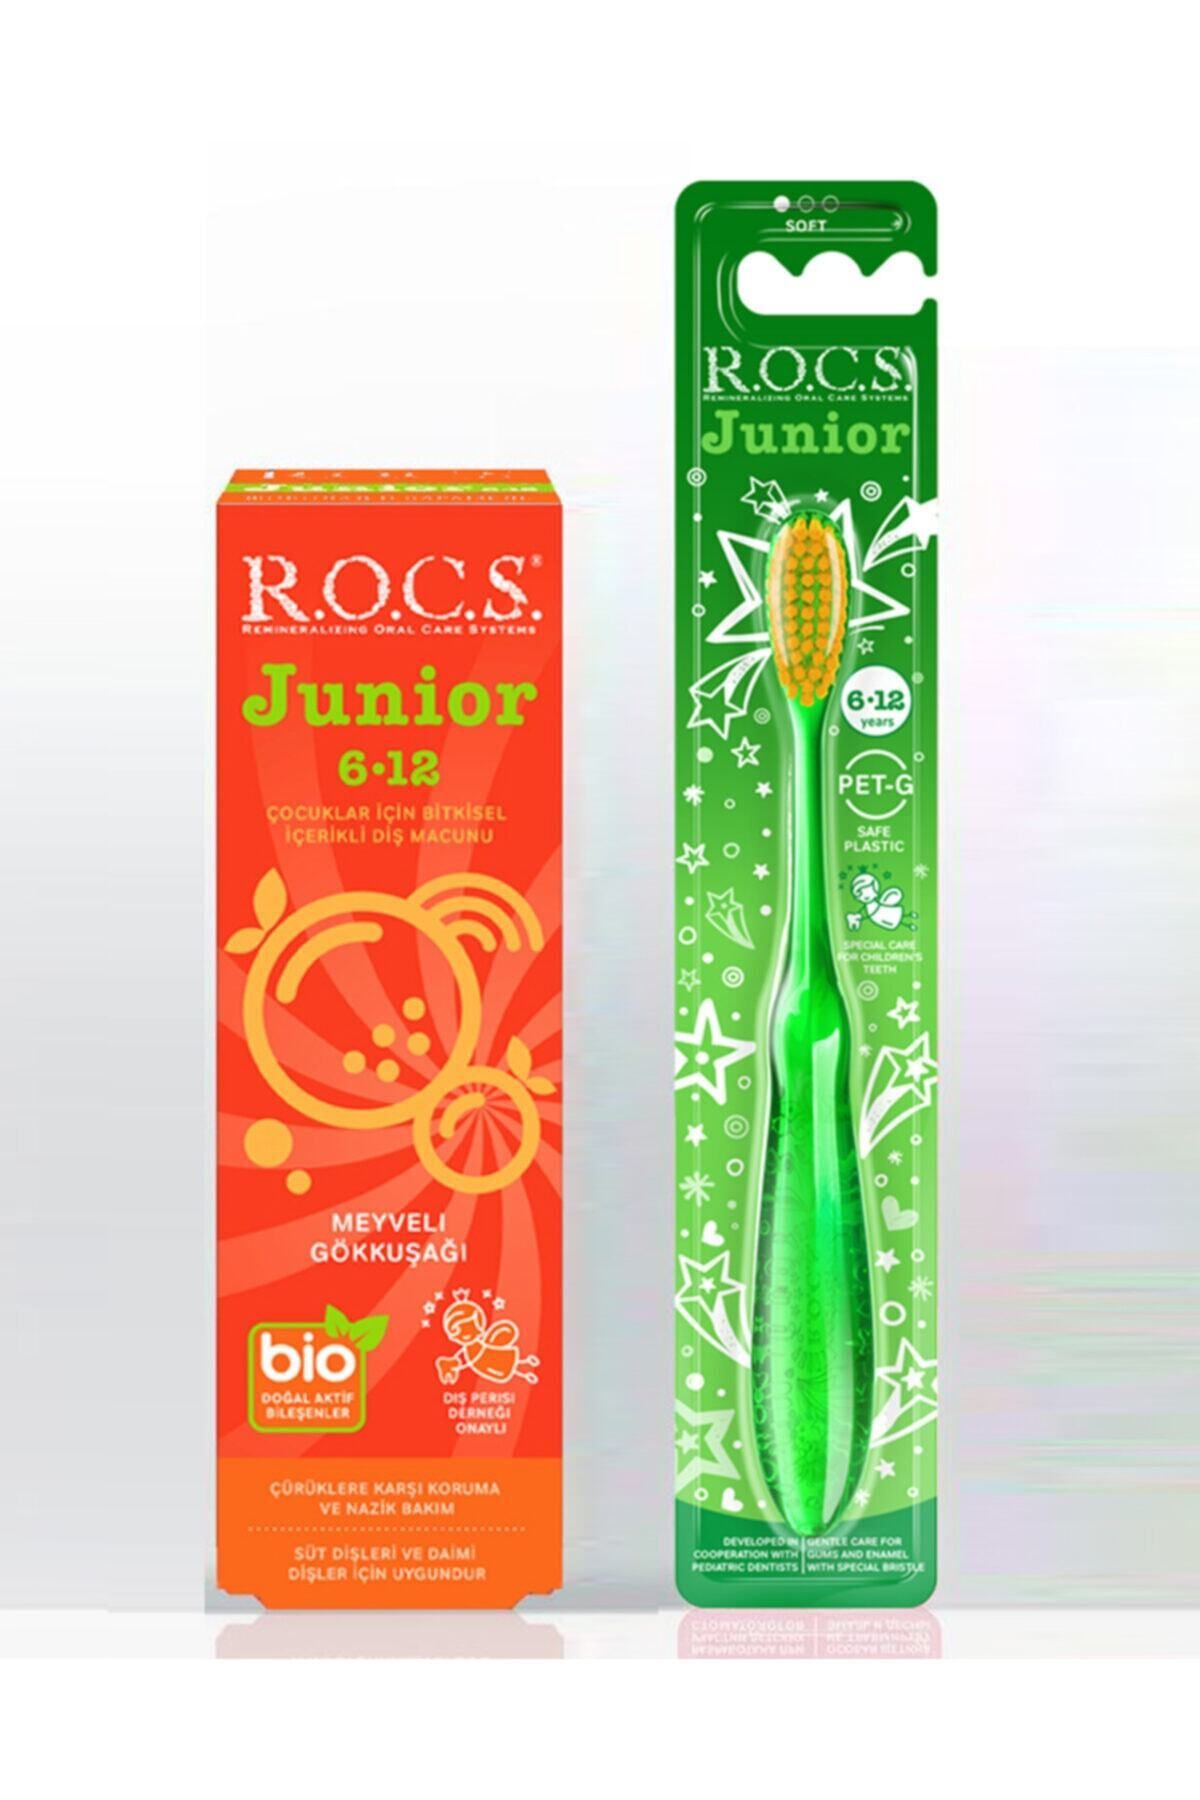 R.O.C.S. Rocs Junıor 6-12 Meyveli Gökkuşağı Diş Macunu Ve Diş Fırçası Seti